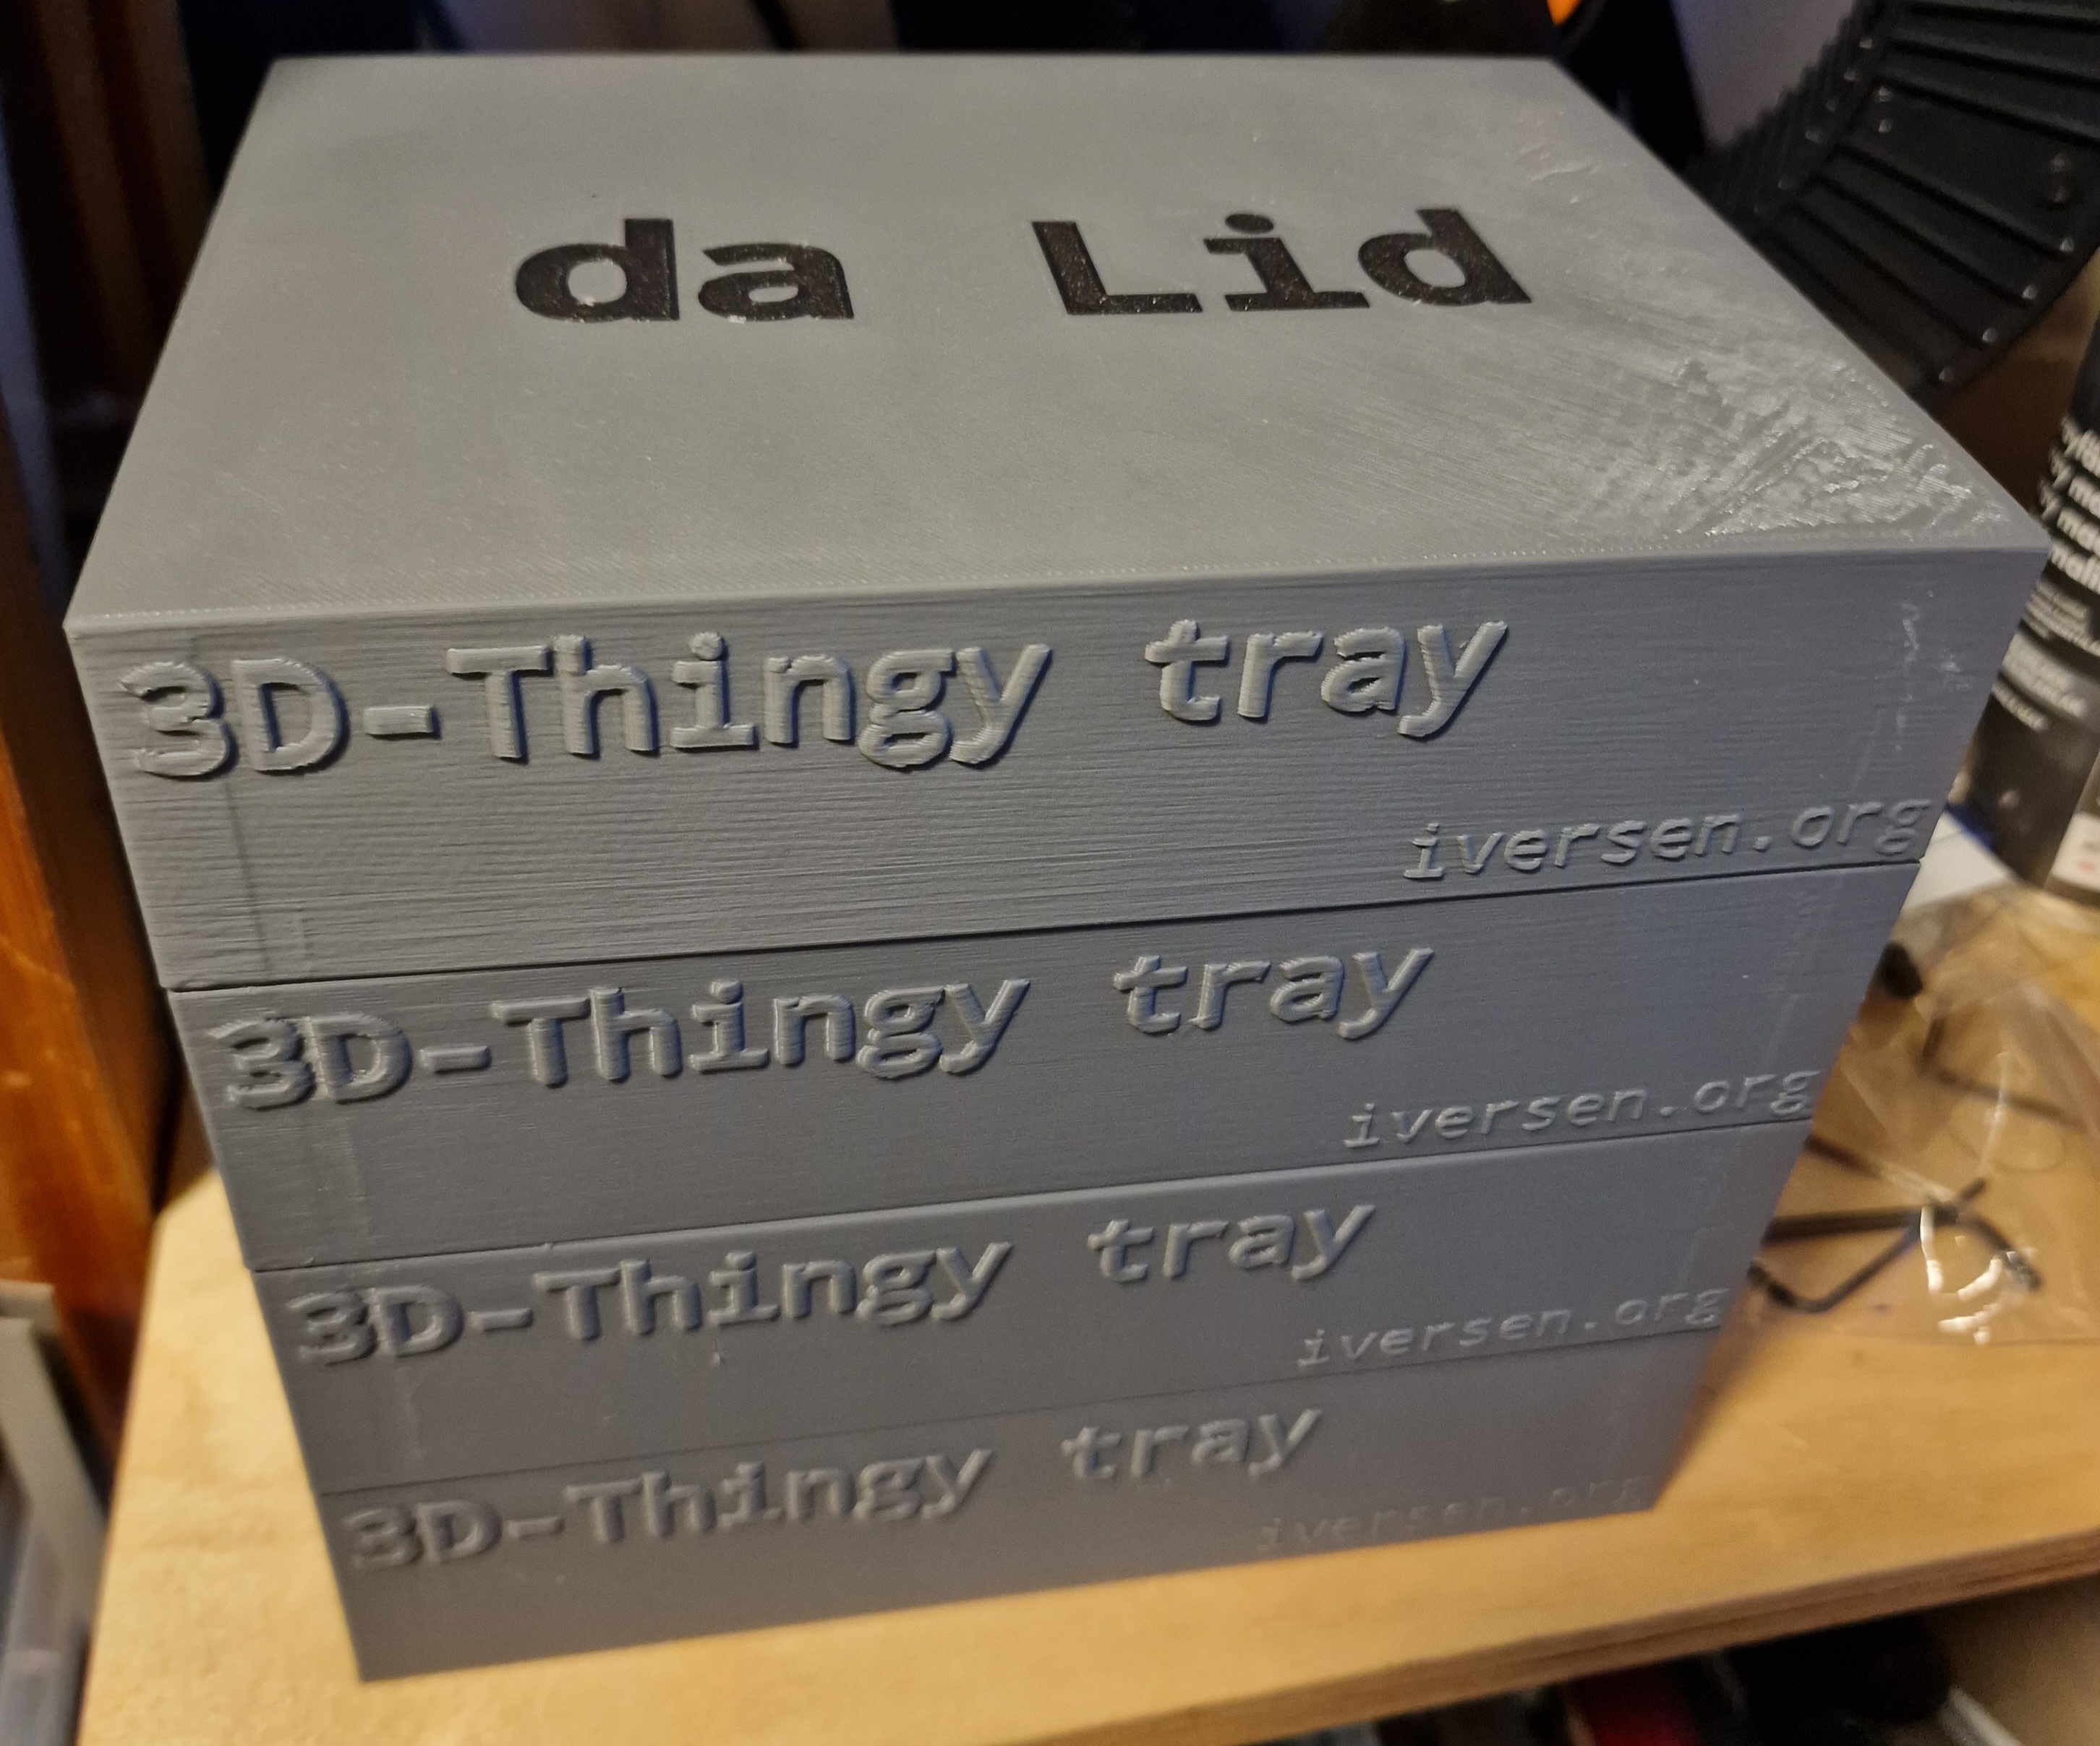 3D-Thingy tray